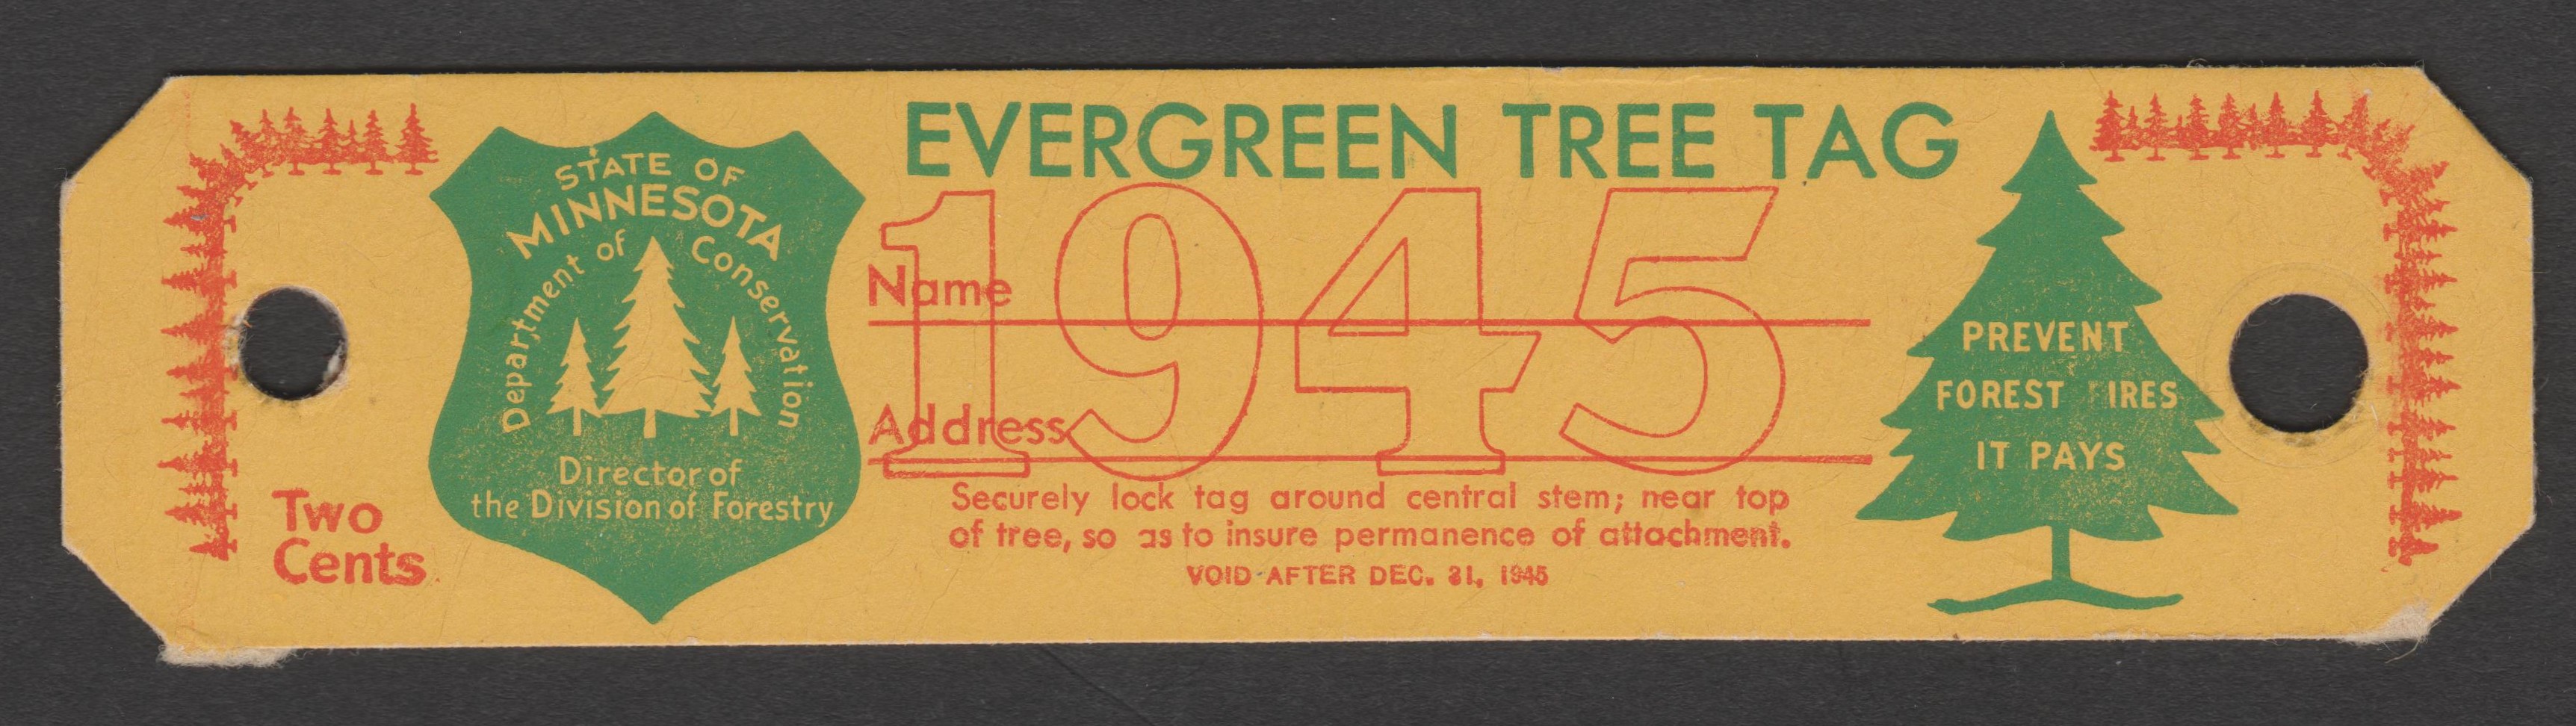 MN evergreen tree tag CT21 2c unused VF, 1945 P